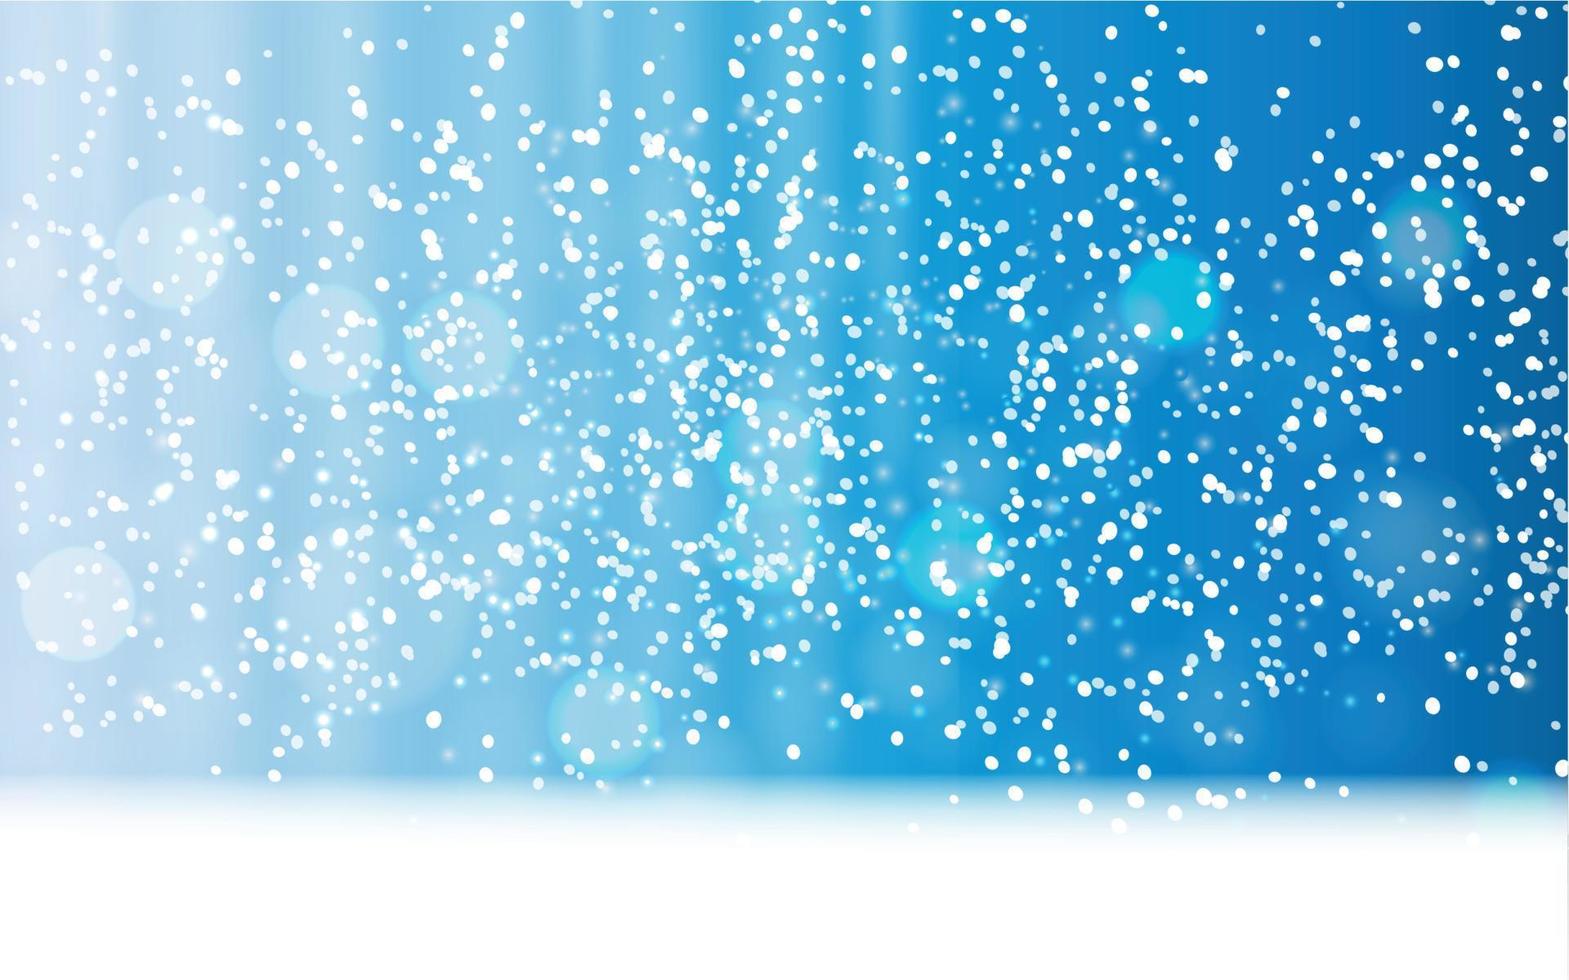 abstra hiver neige fond bleu illustration vectorielle vecteur